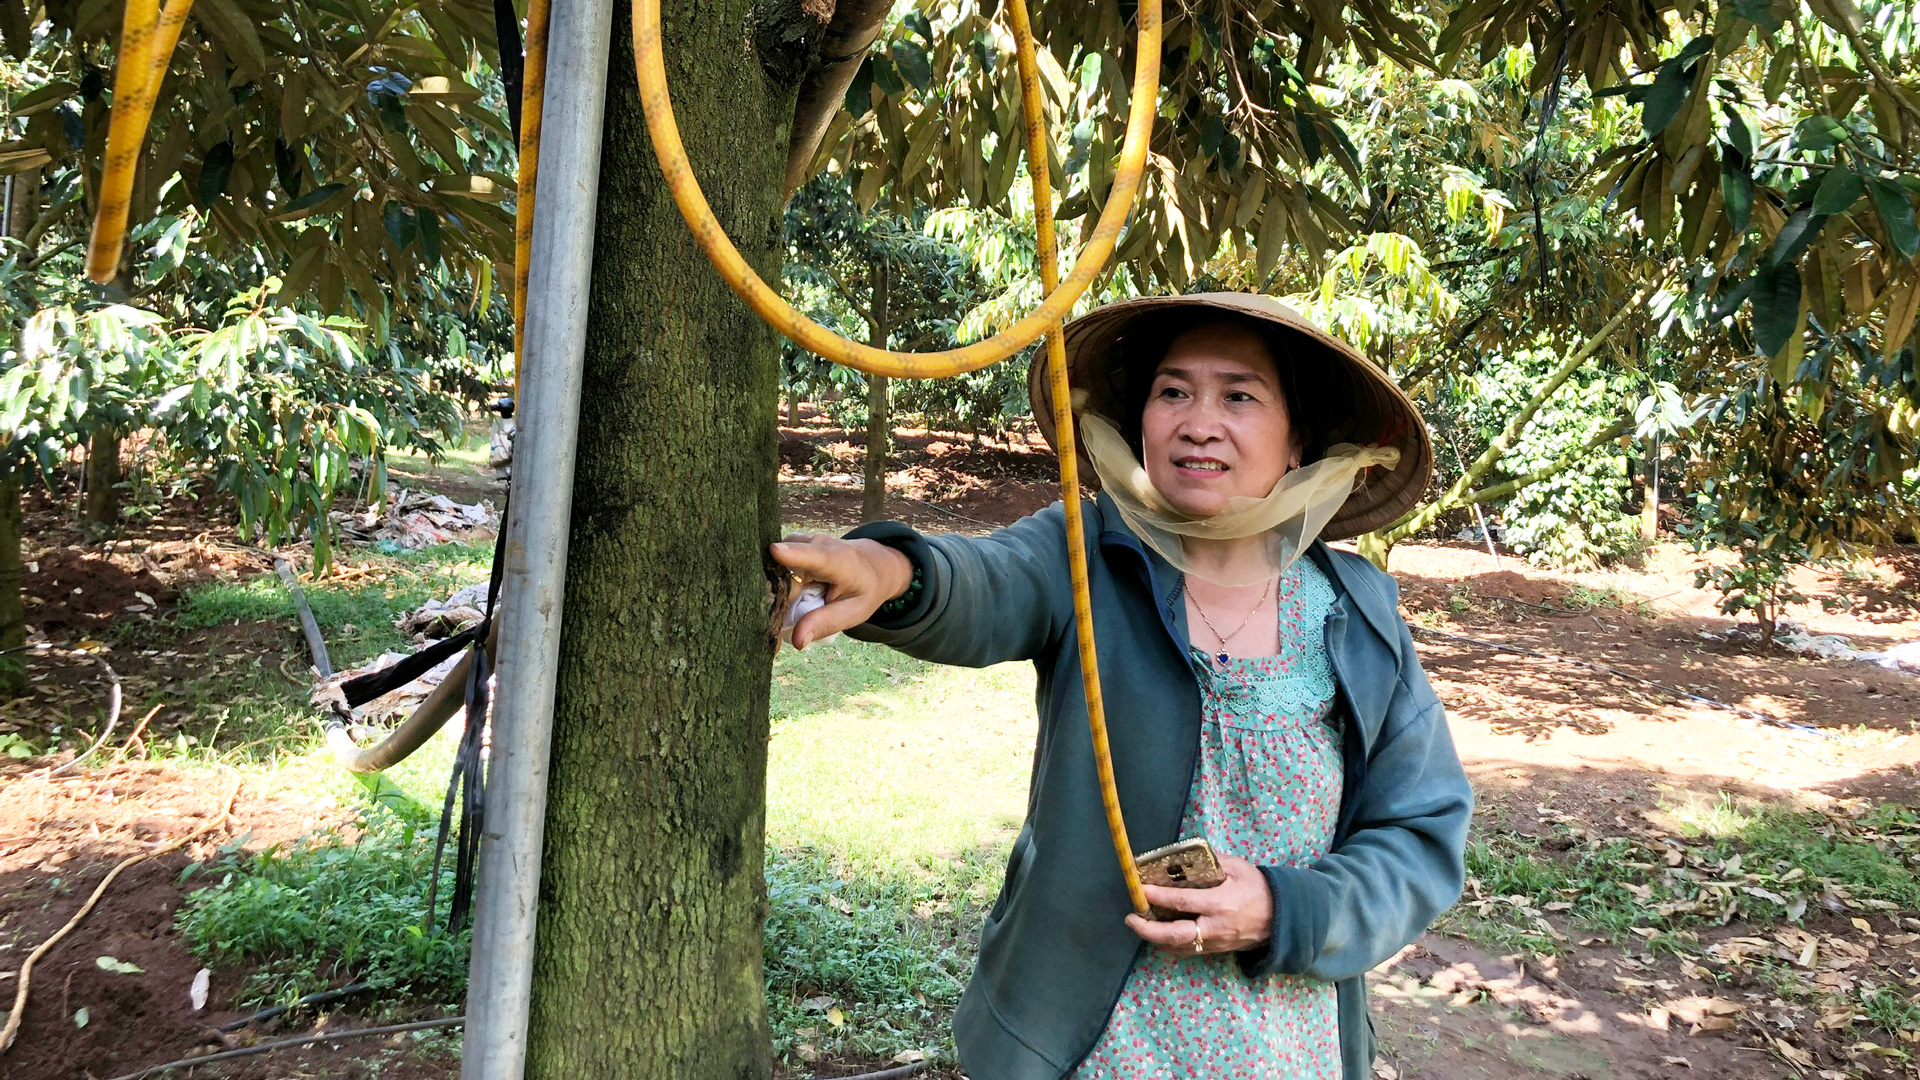 Trồng 2,8 ha một loài cây đặc sản áp dụng công nghệ cao ở Lâm Đồng, nhiều người tò mò muốn xem - Ảnh 1.